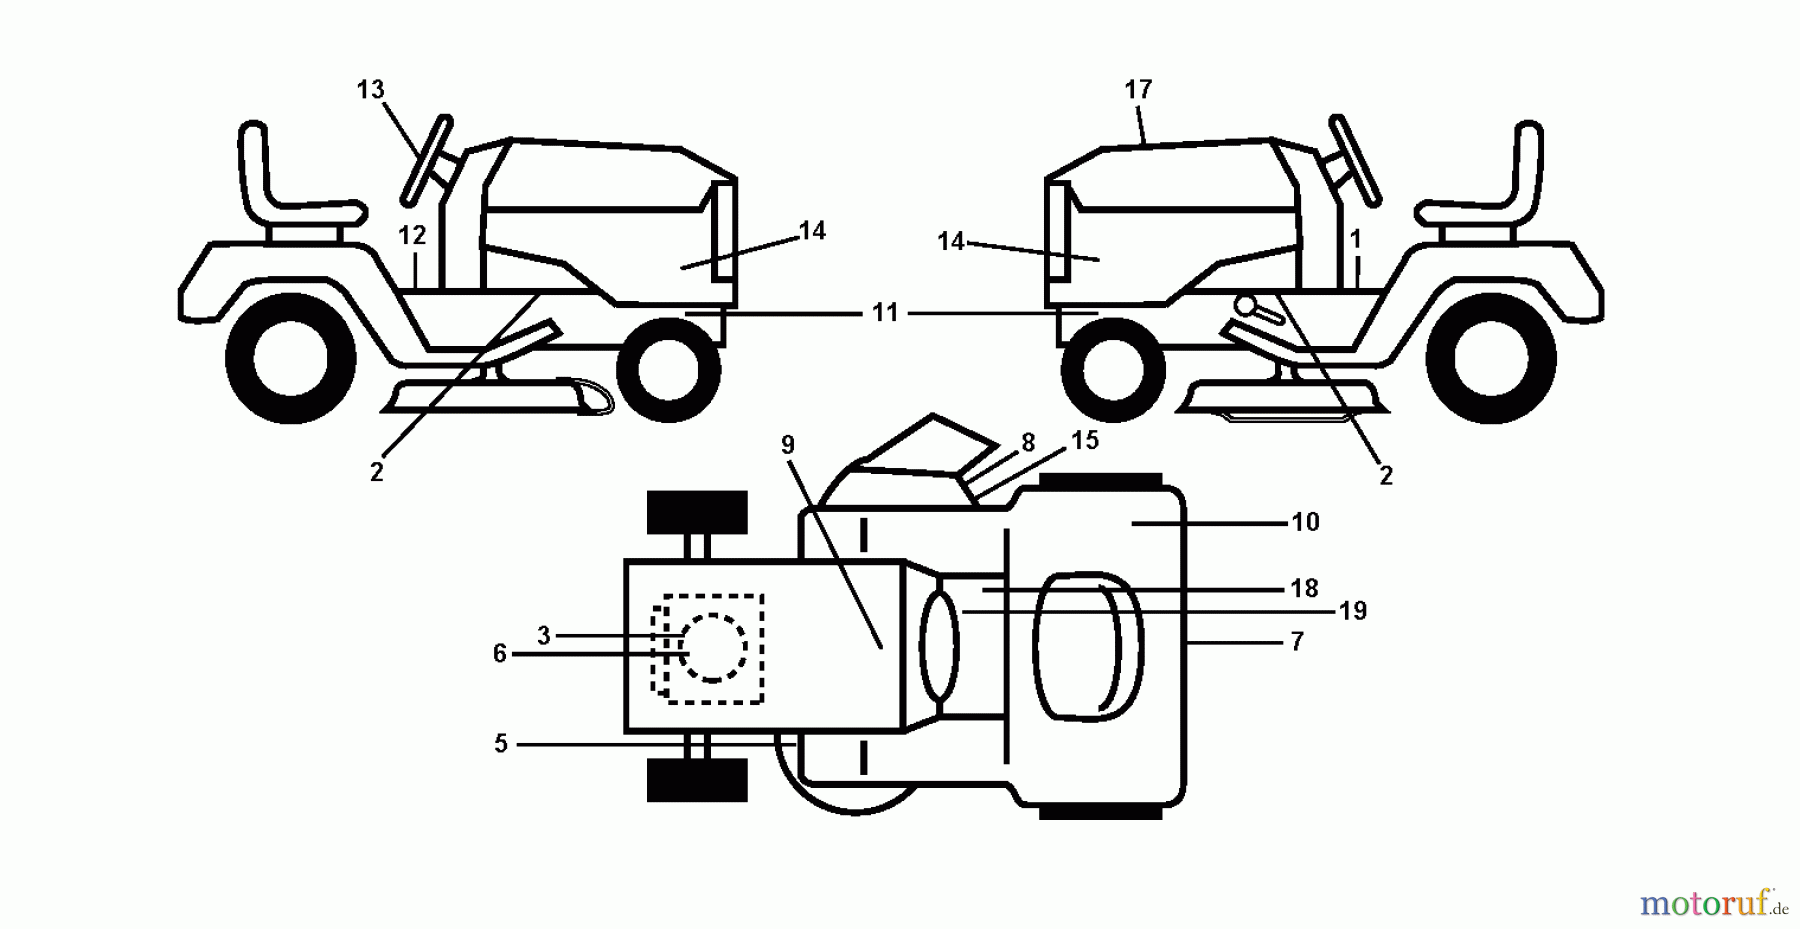  Jonsered Rasen  und Garten Traktoren LT2223 A2 (96041011101) - Jonsered Lawn & Garden Tractor (2010-02) DECALS